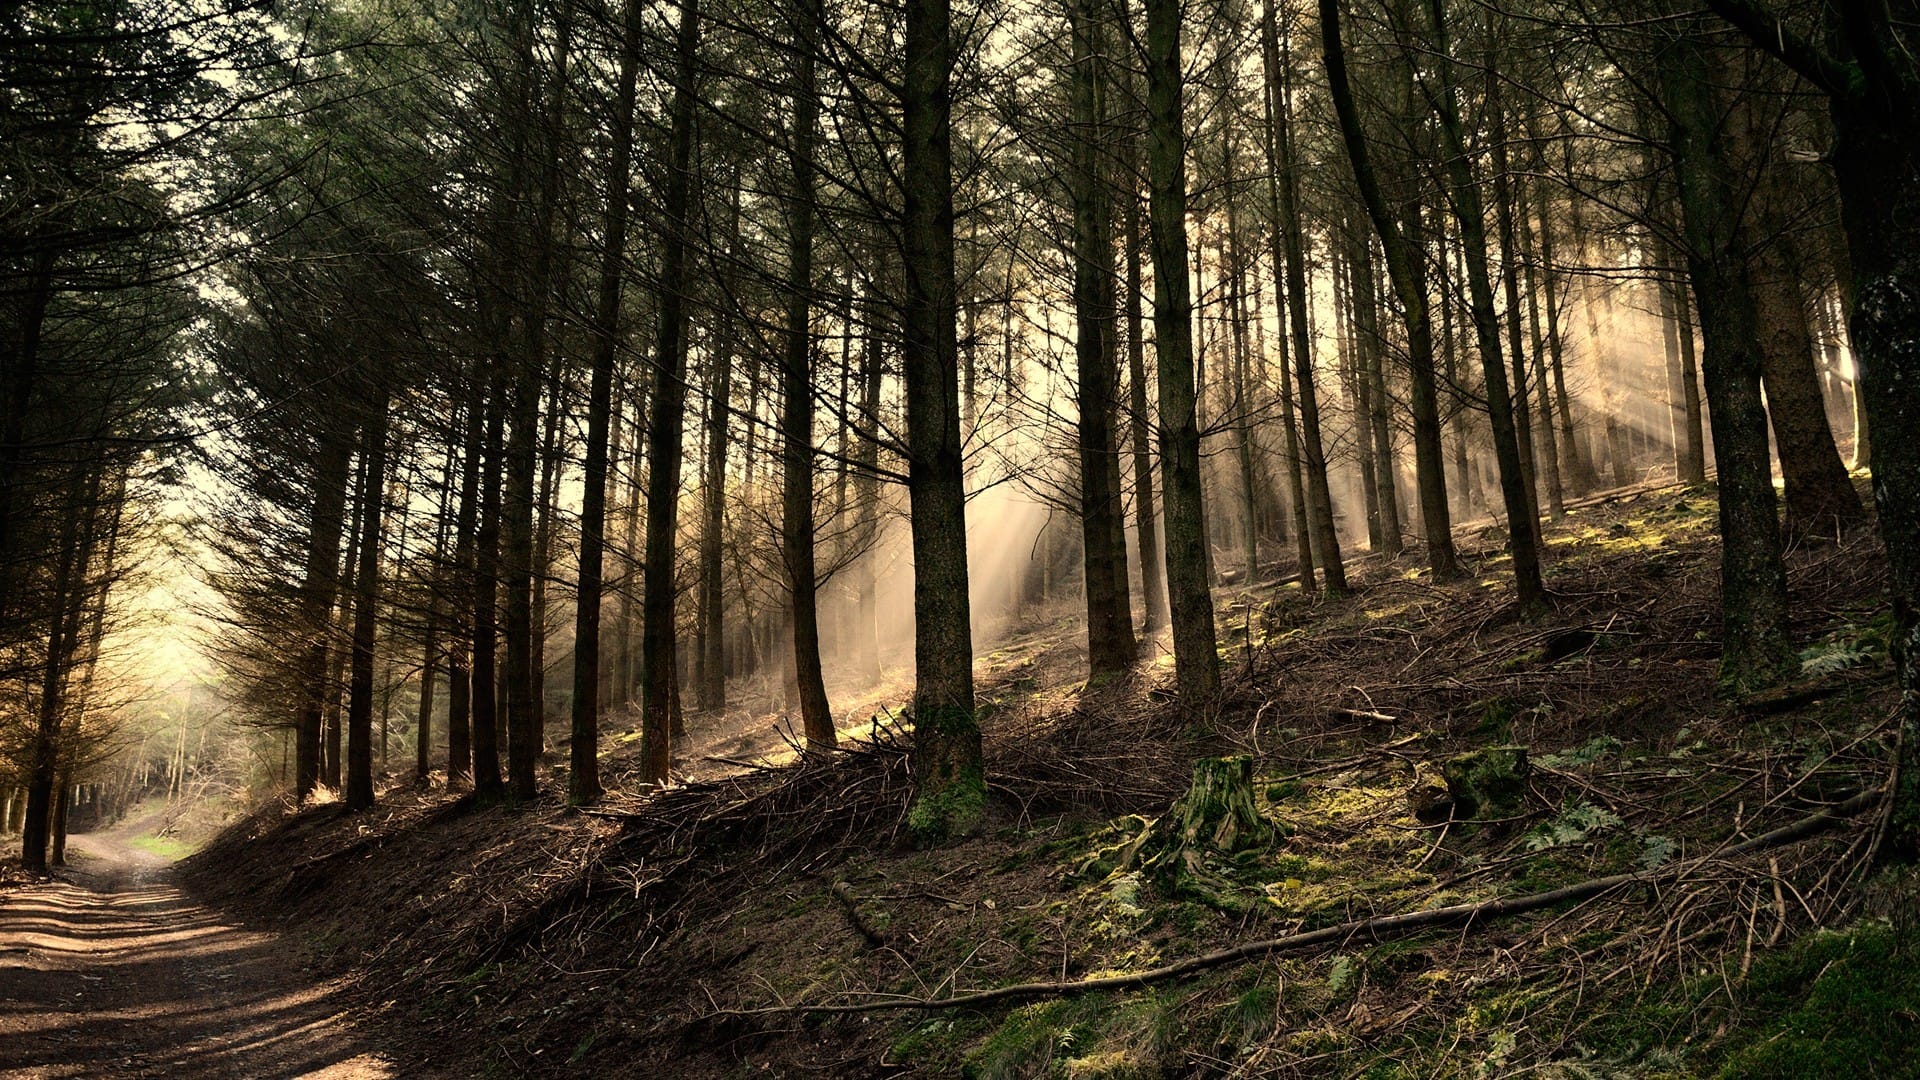 阳光照进森林深处唯美风格自然风景图片壁纸